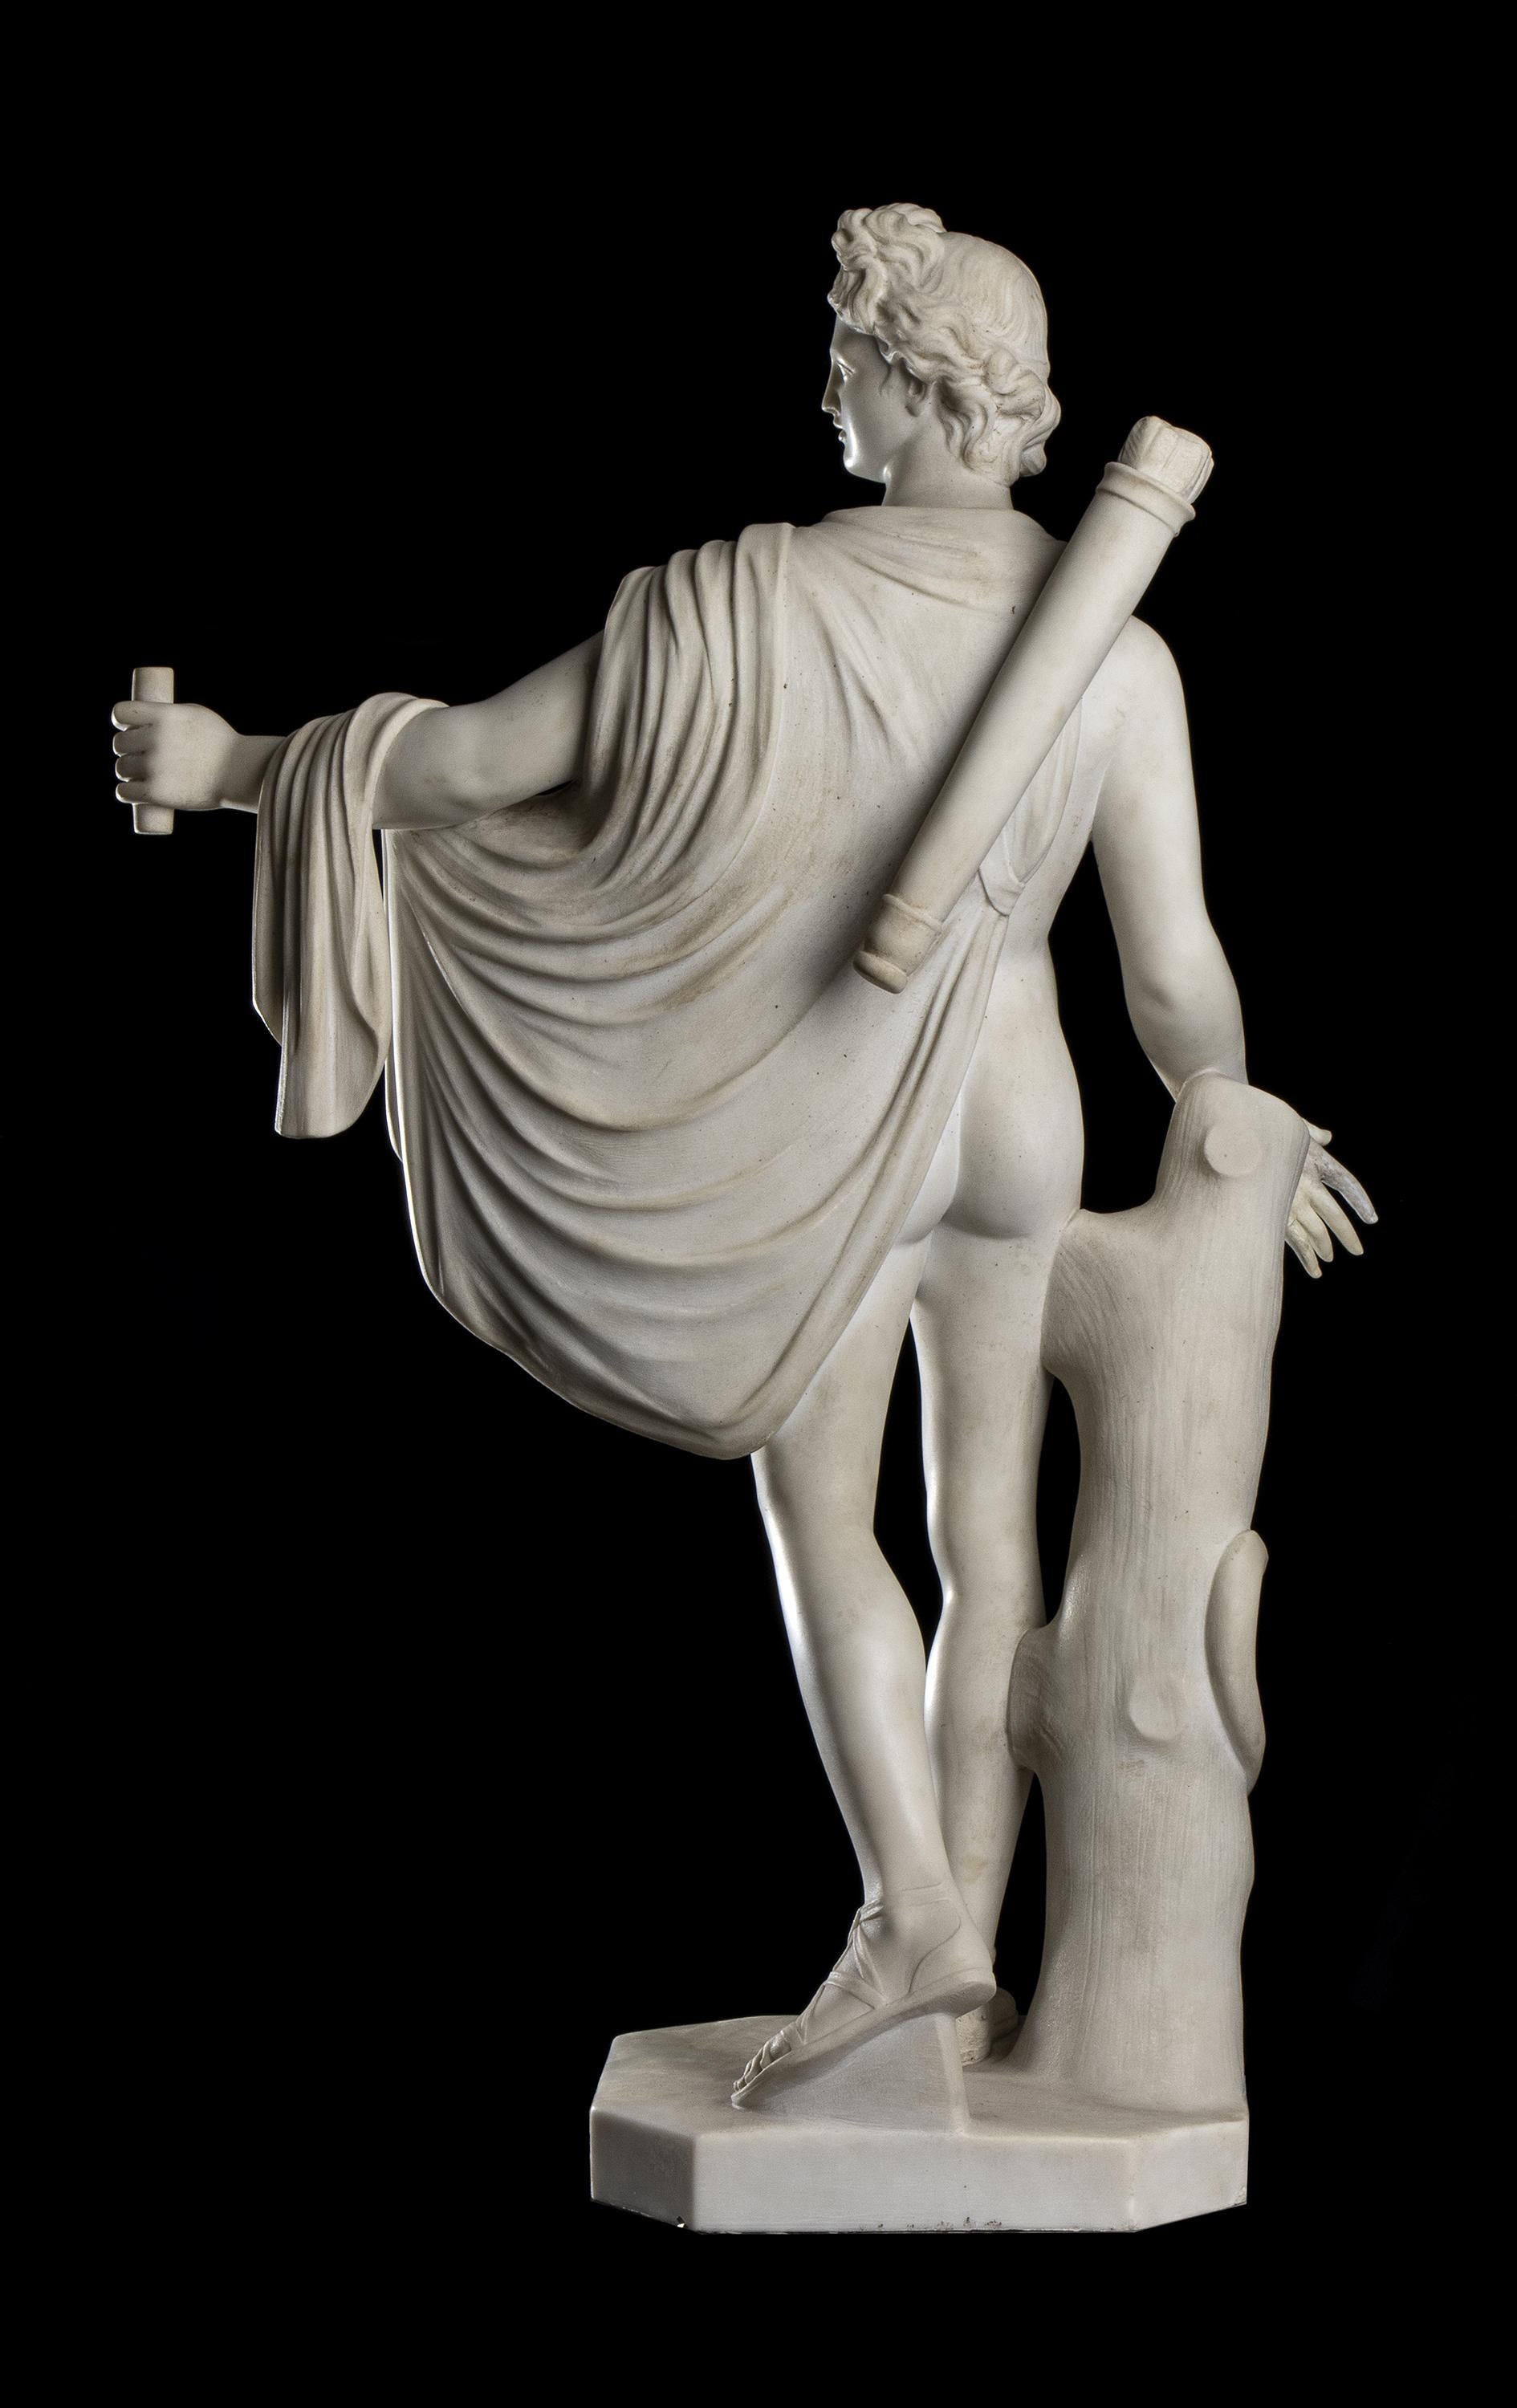  White Statuary Marble Sculpture Apollo Belvedere 19th Classical Grand Tour  4